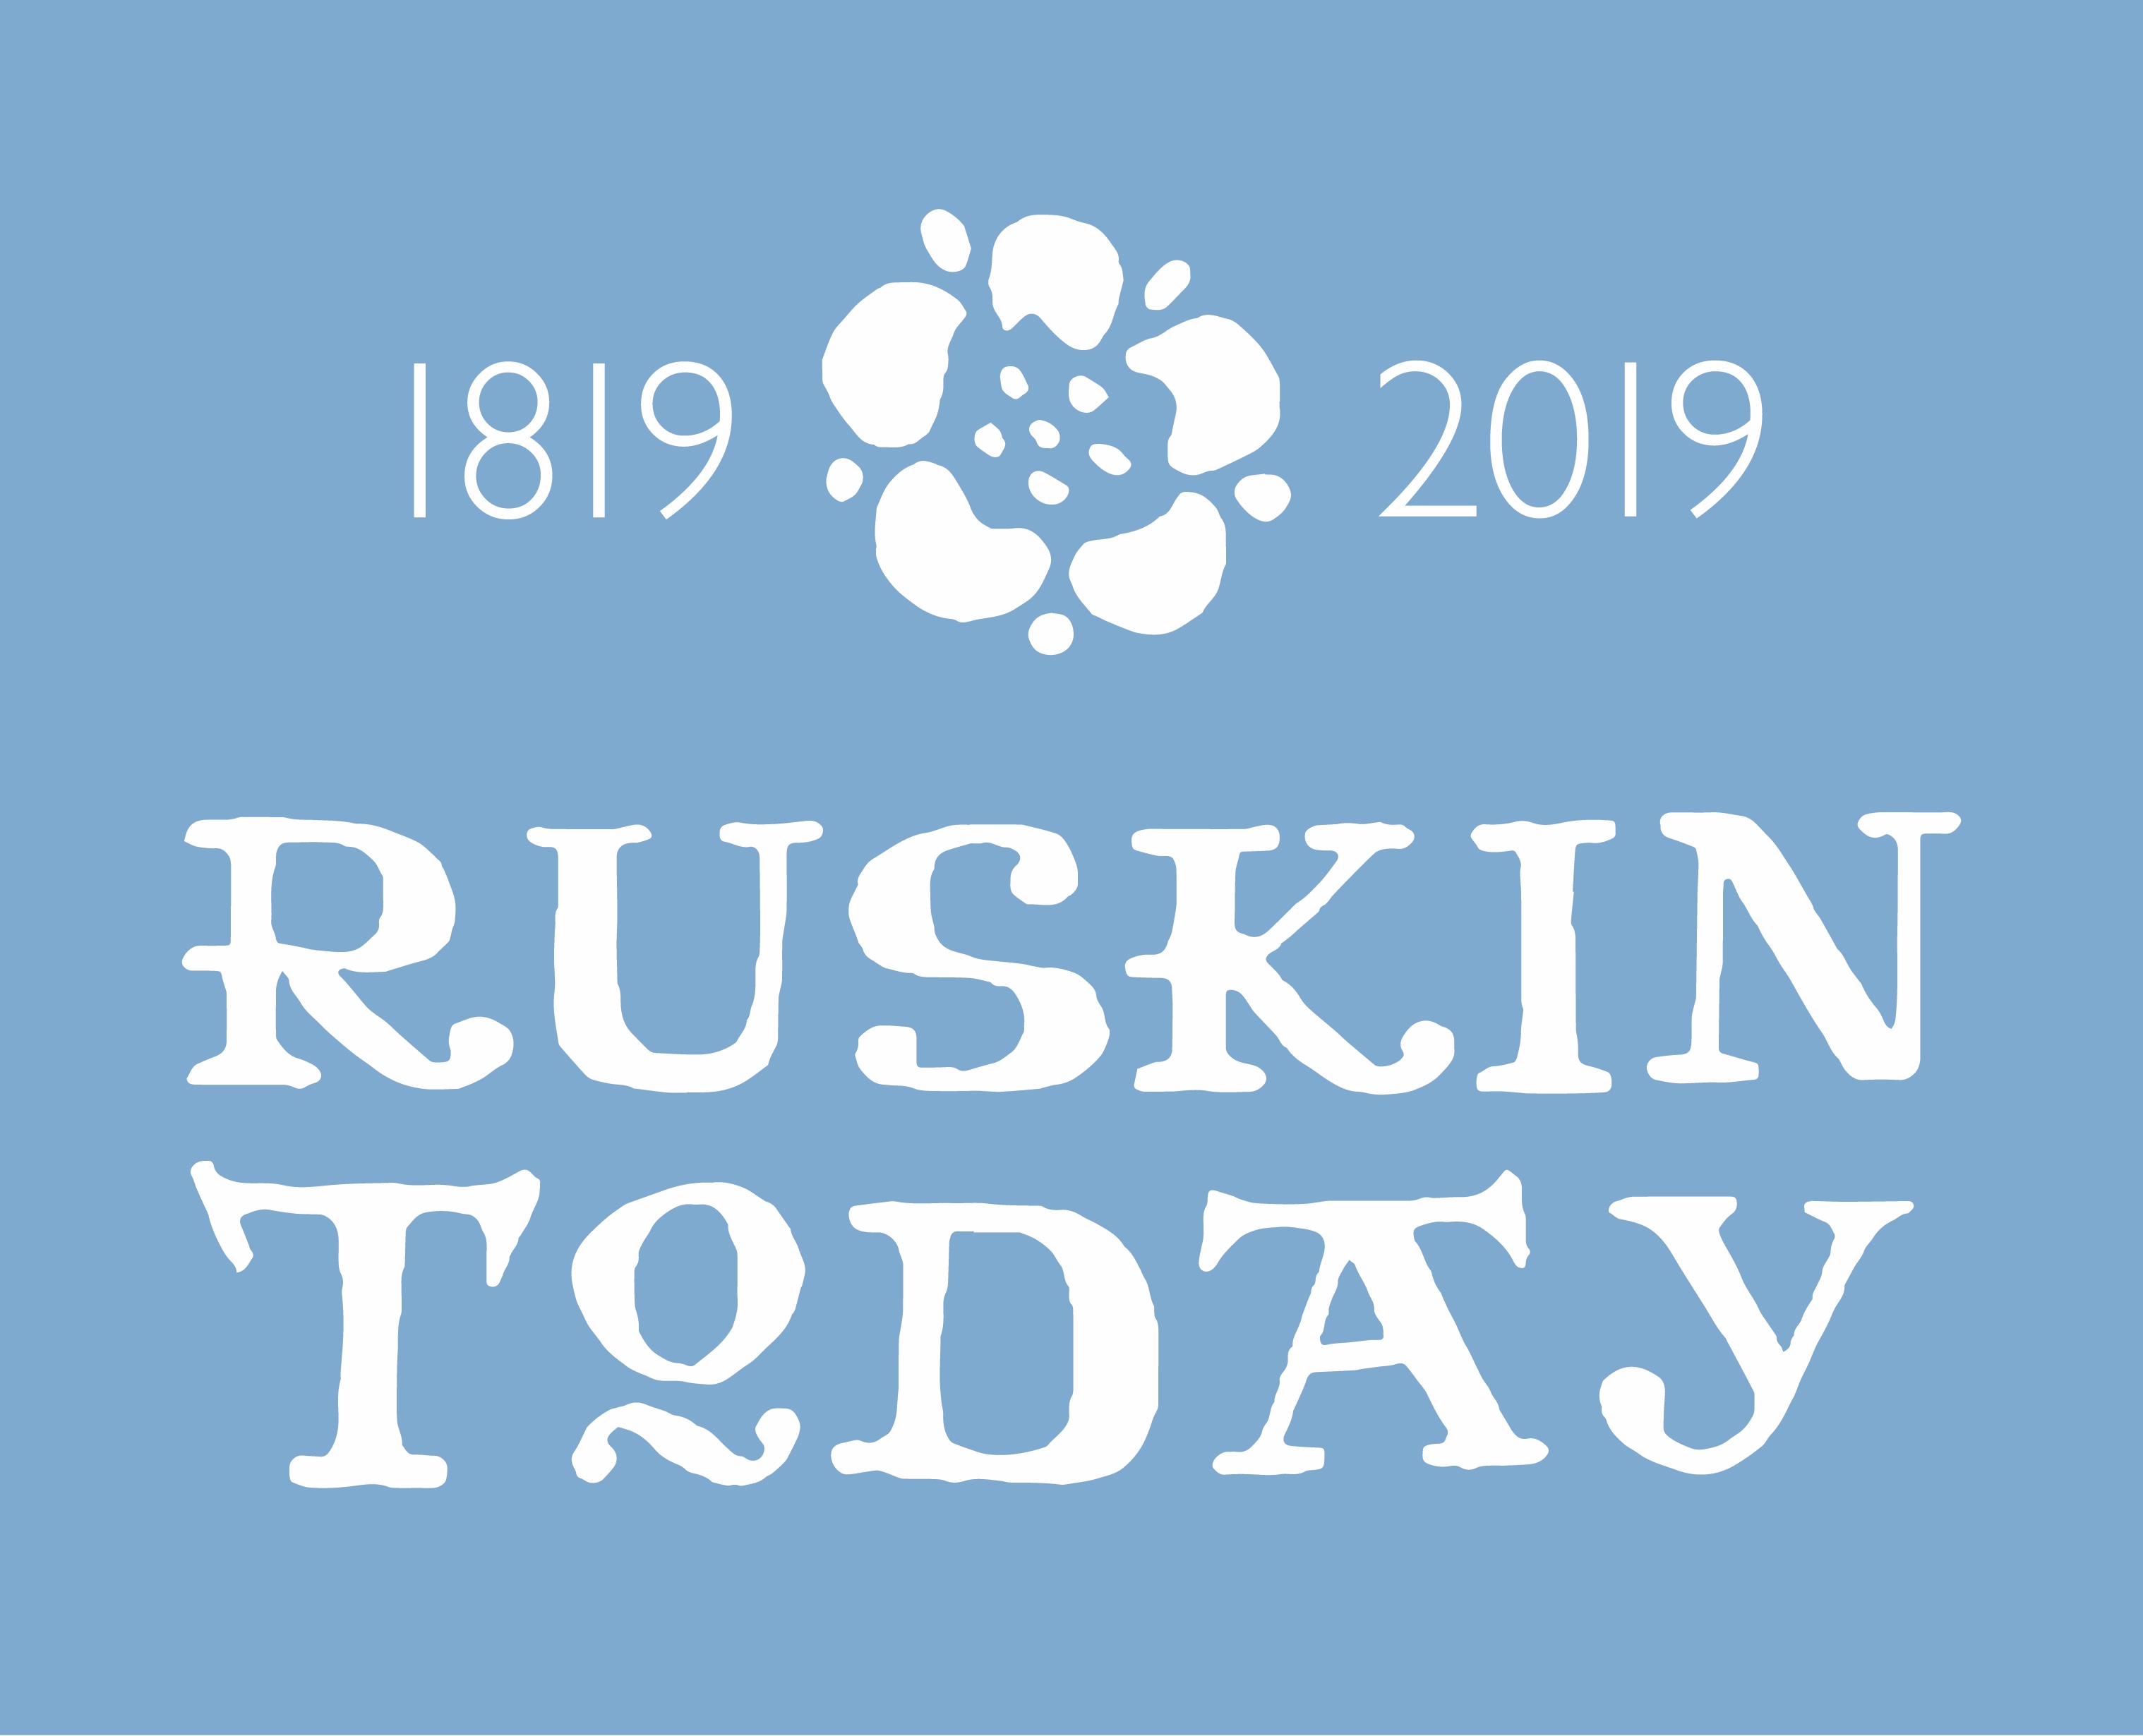 Ruskin_To-Day_2019-alt1_CMYK-Reversed_Print.jpg